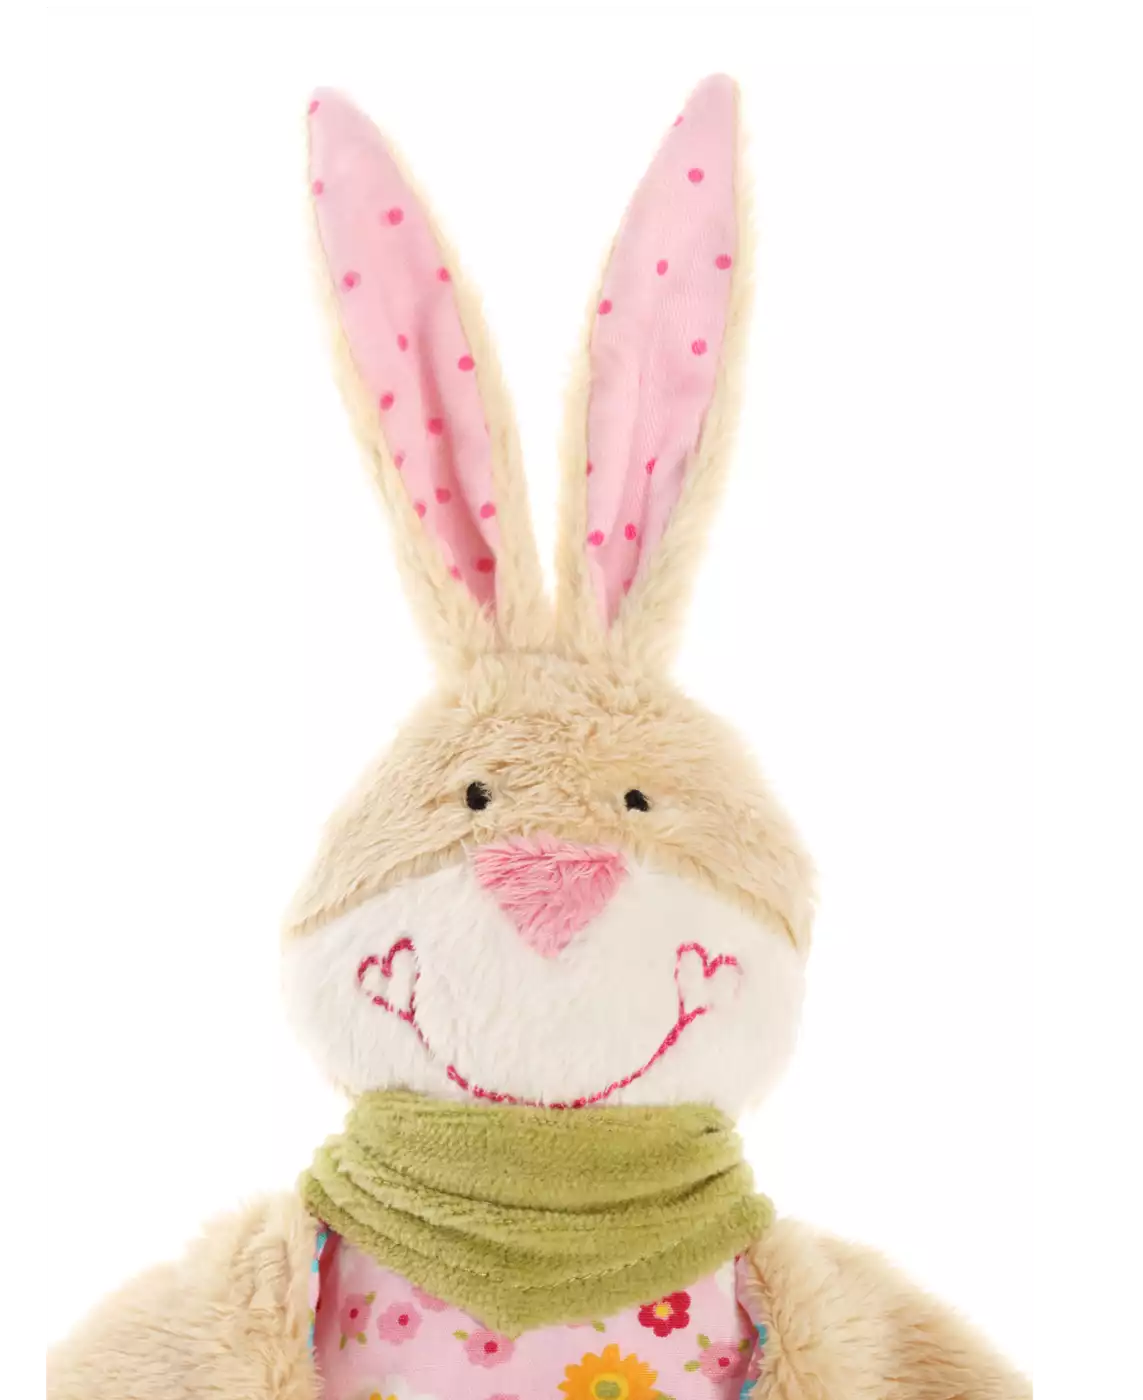 Schnuffeltuch Bungee Bunny sigikid 2000554326609 6